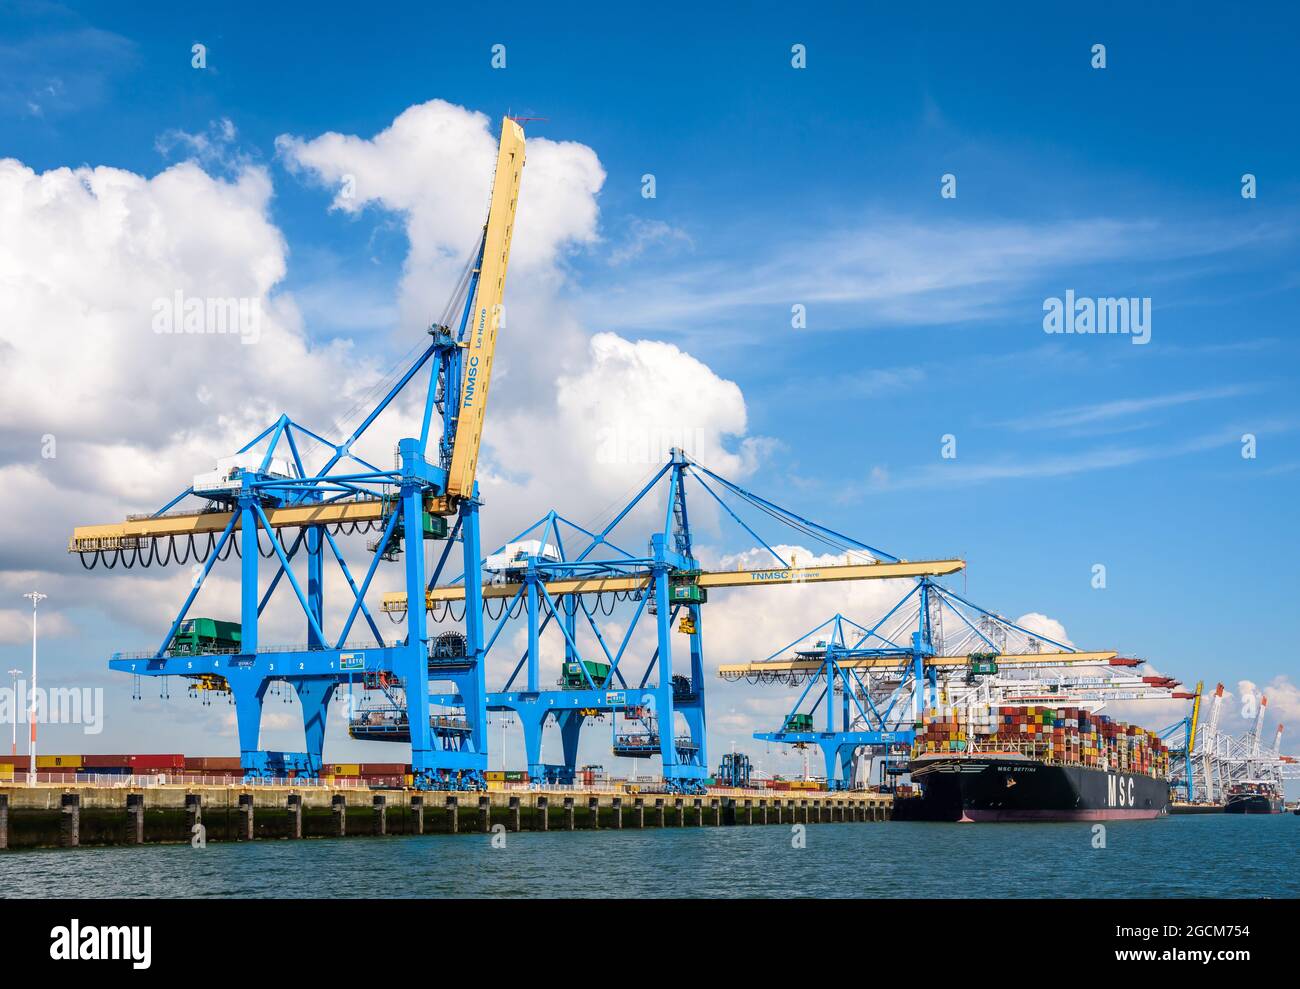 Le terminal à conteneurs du port 2000, situé au Havre, en France, est équipé de grues portiques à conteneurs super post-panamax pour recevoir les plus grands navires à conteneurs. Banque D'Images